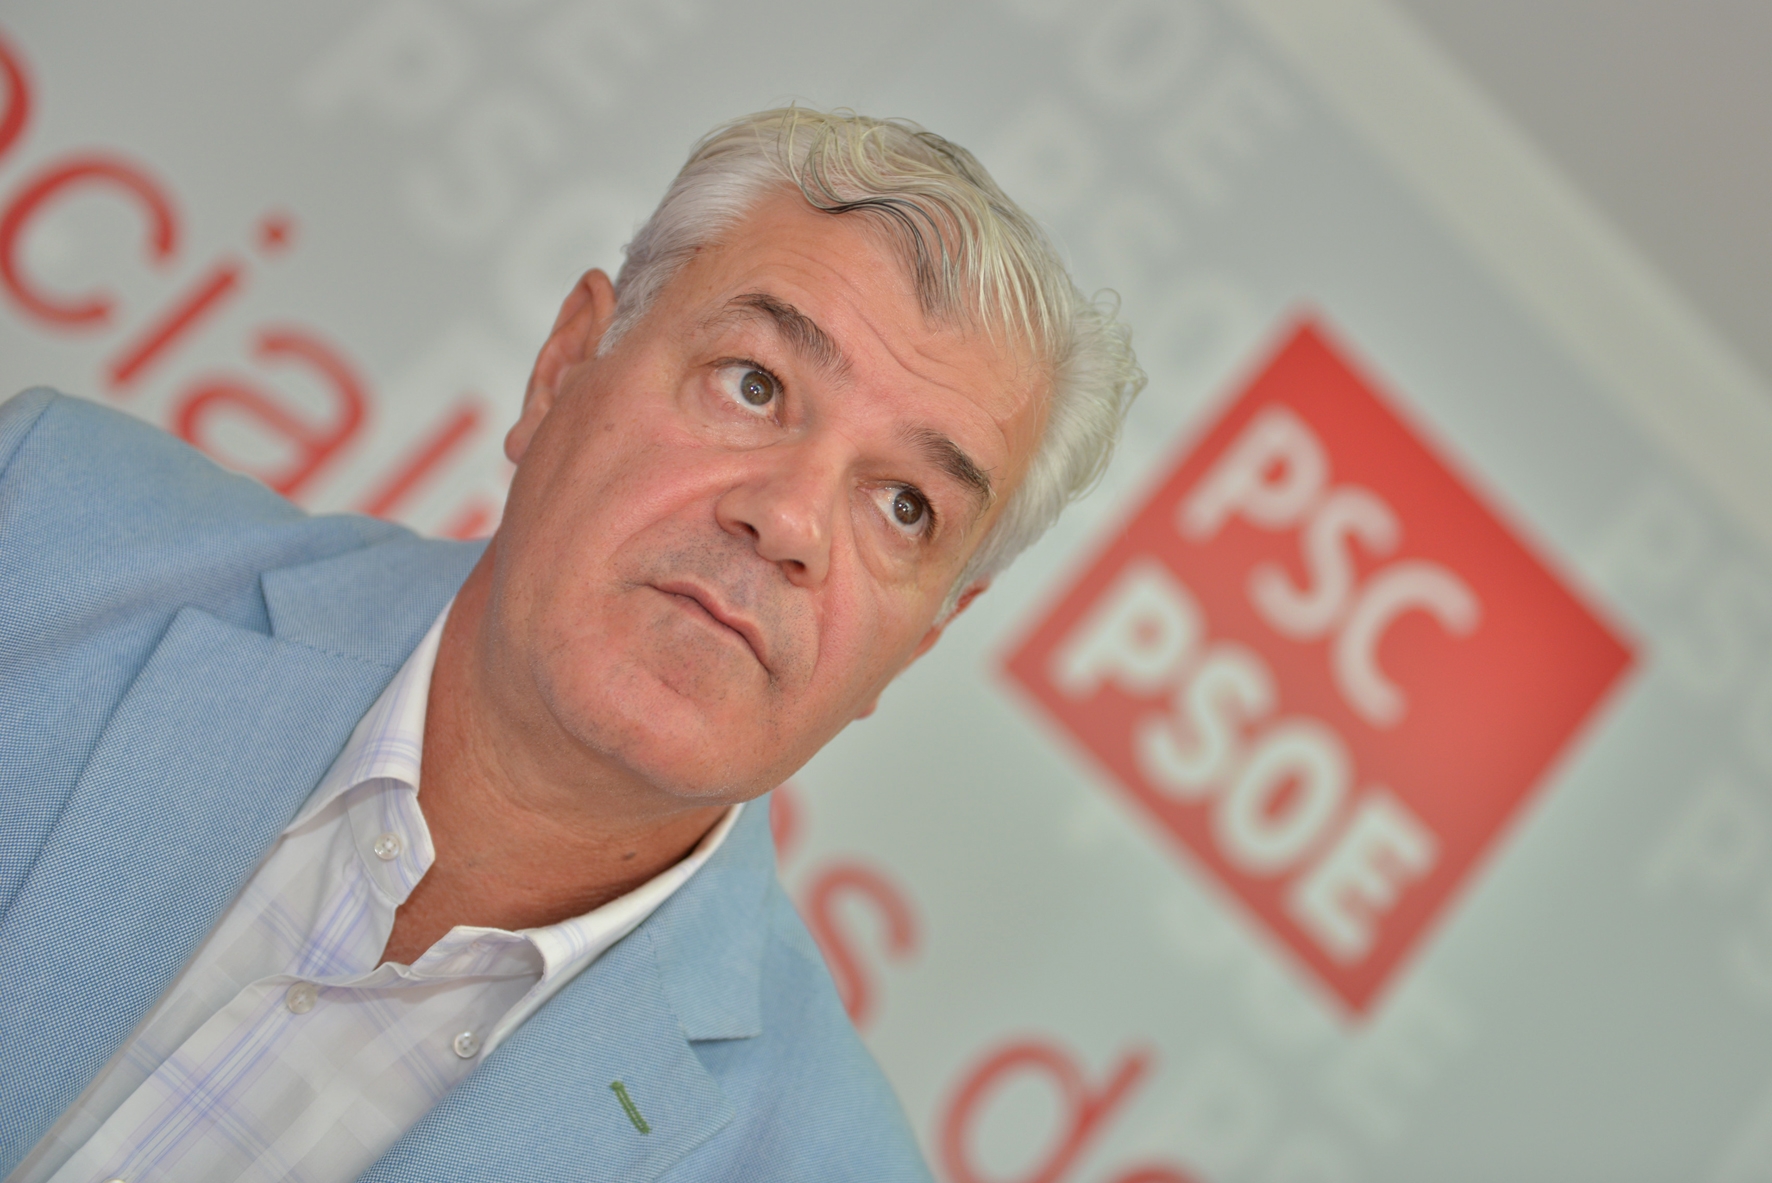 El PSOE acusa a la AHI de utilizar a los mayores herreños para hacer una “política cobarde y rastrera”